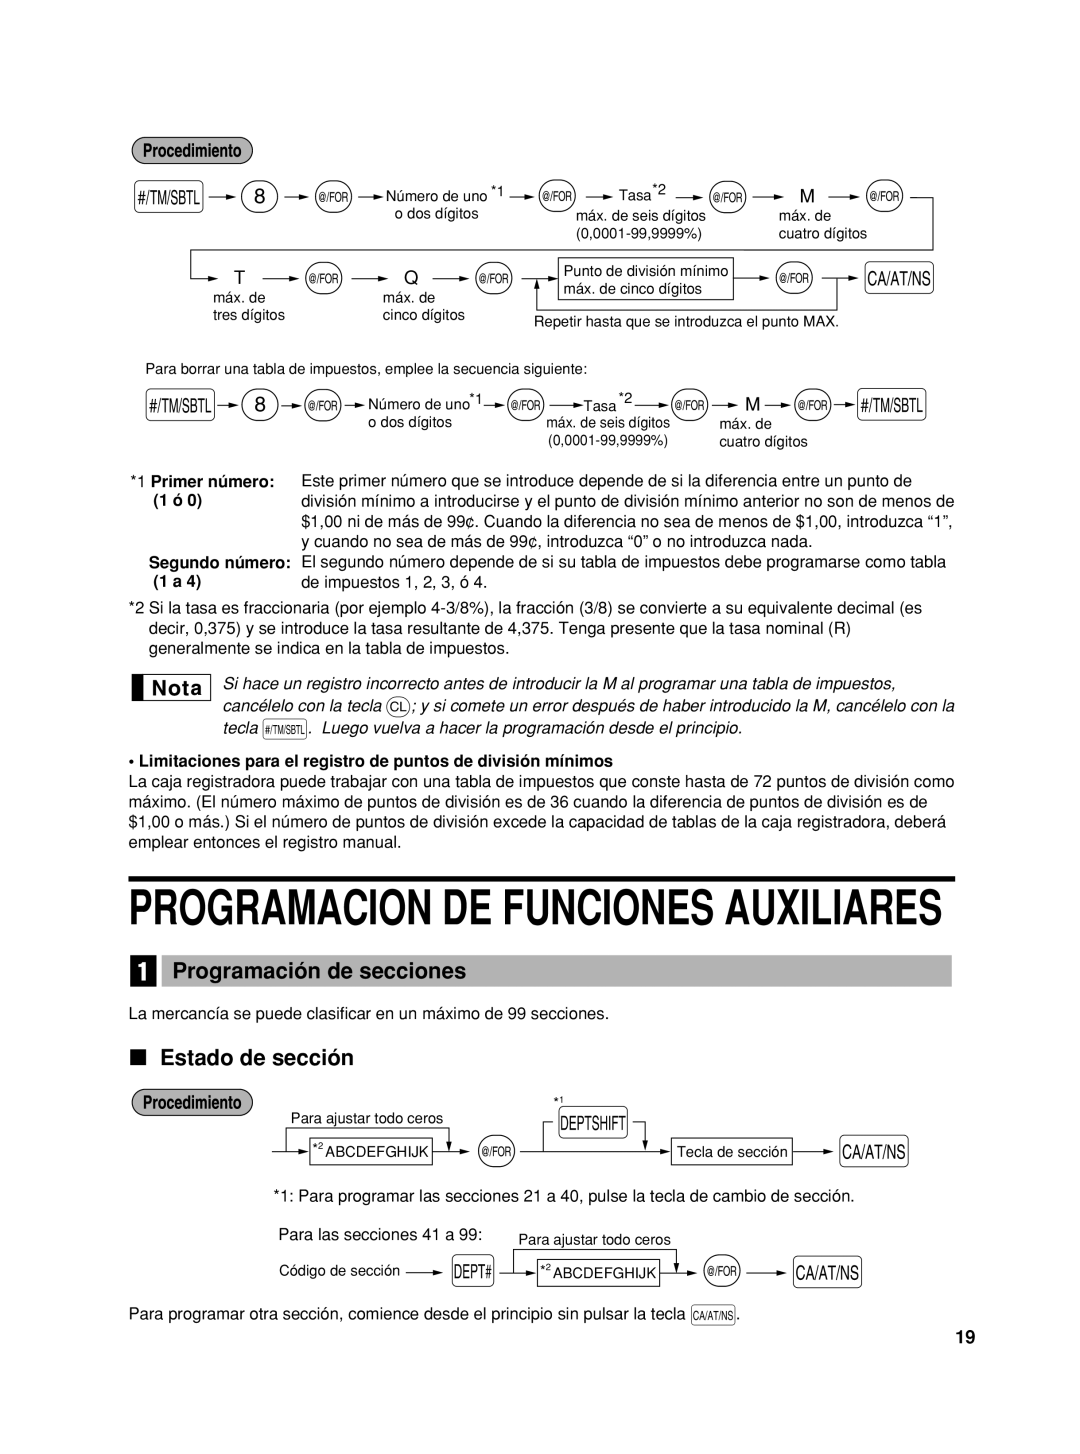 Sharp XE-A42S instruction manual Programacion De Funciones Auxiliares, Programación de secciones, Estado de sección 